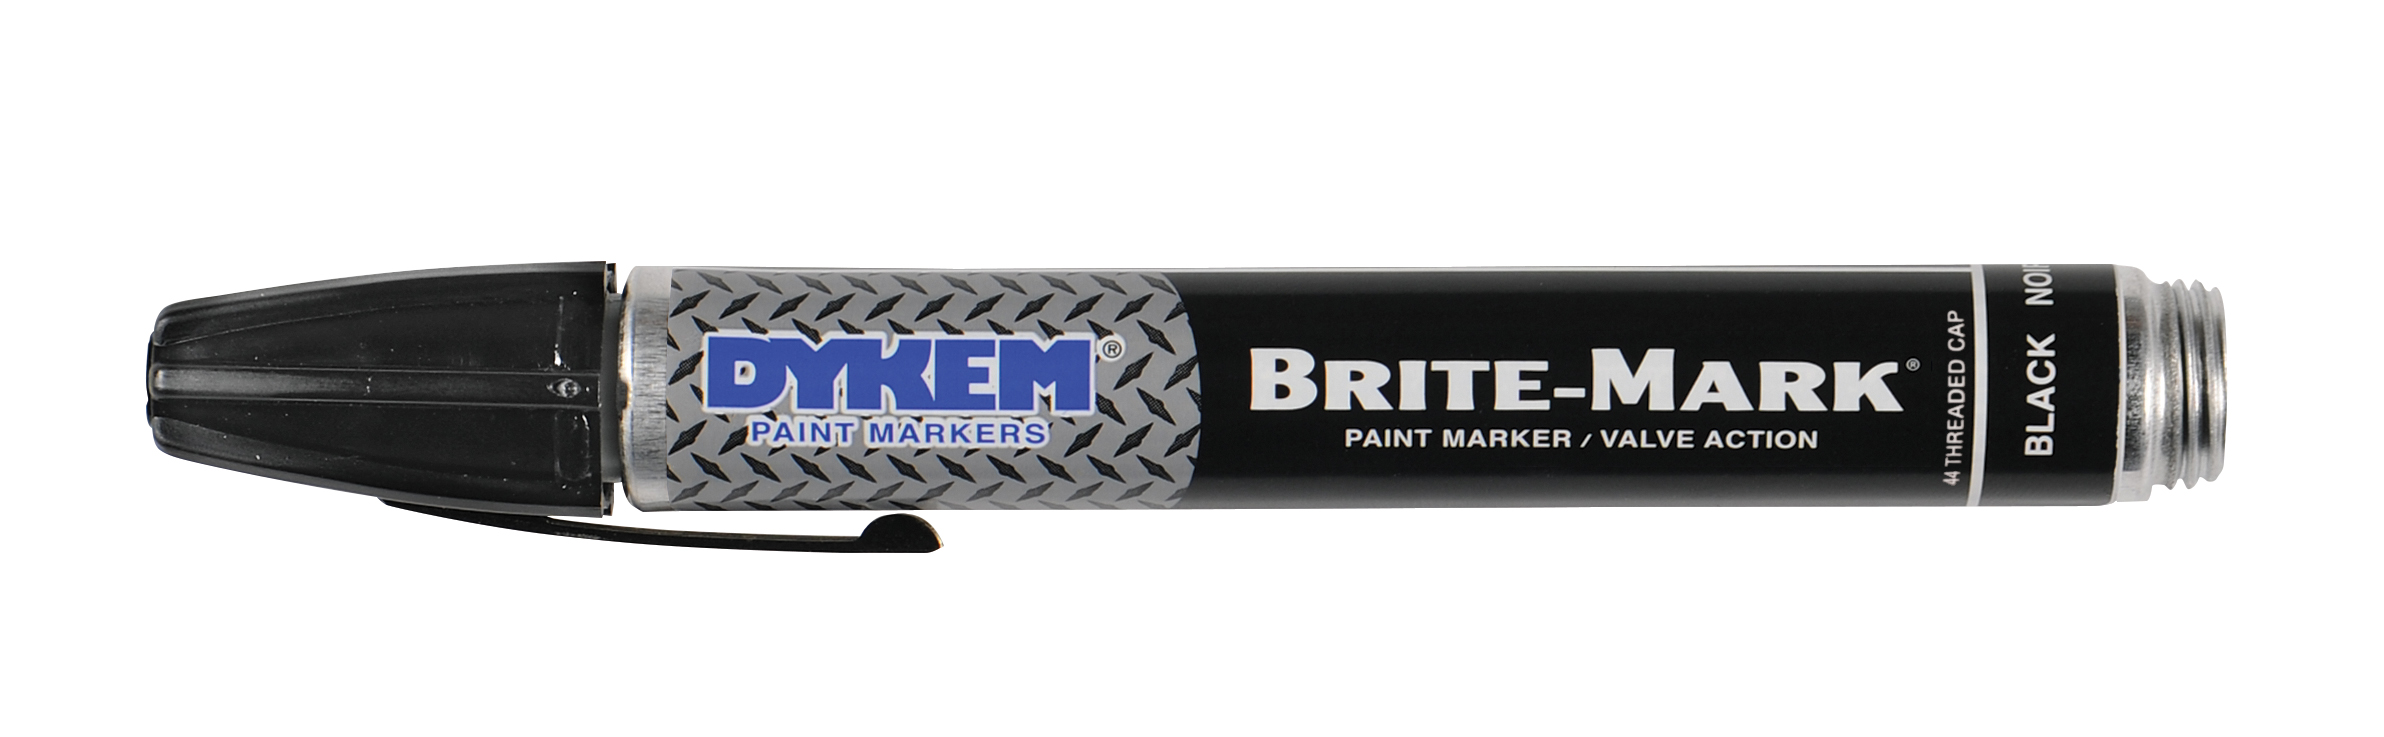 Dykem BRITE-MARK Paint Marker - White